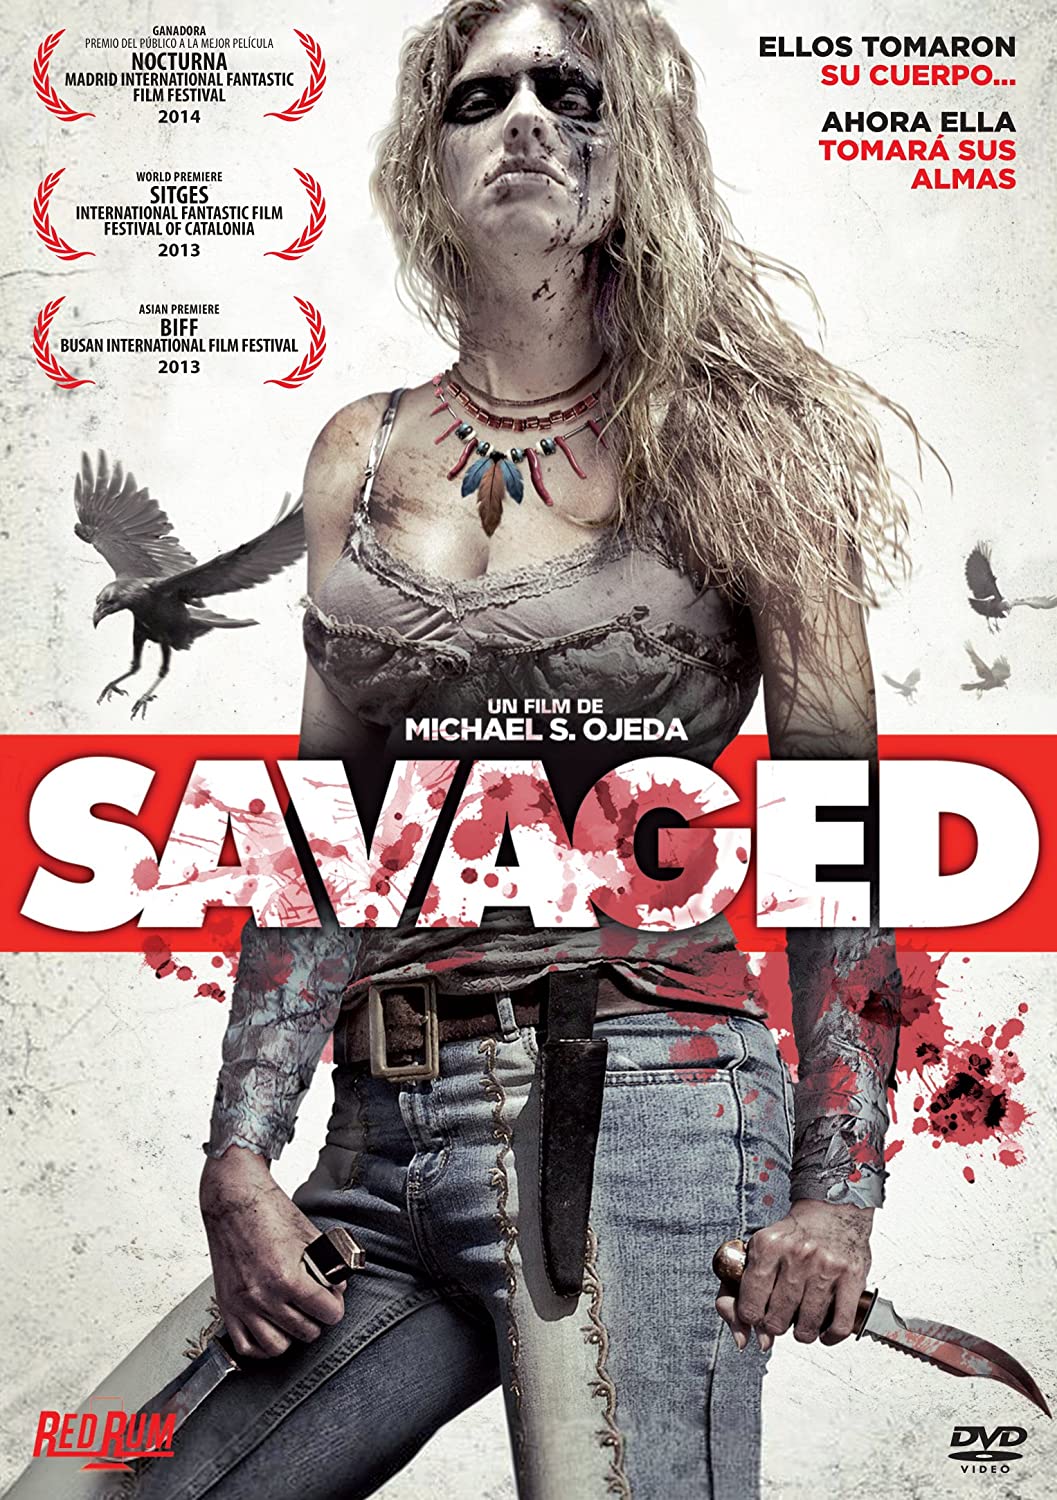 Savaged (2013) a.k.a. Avenged